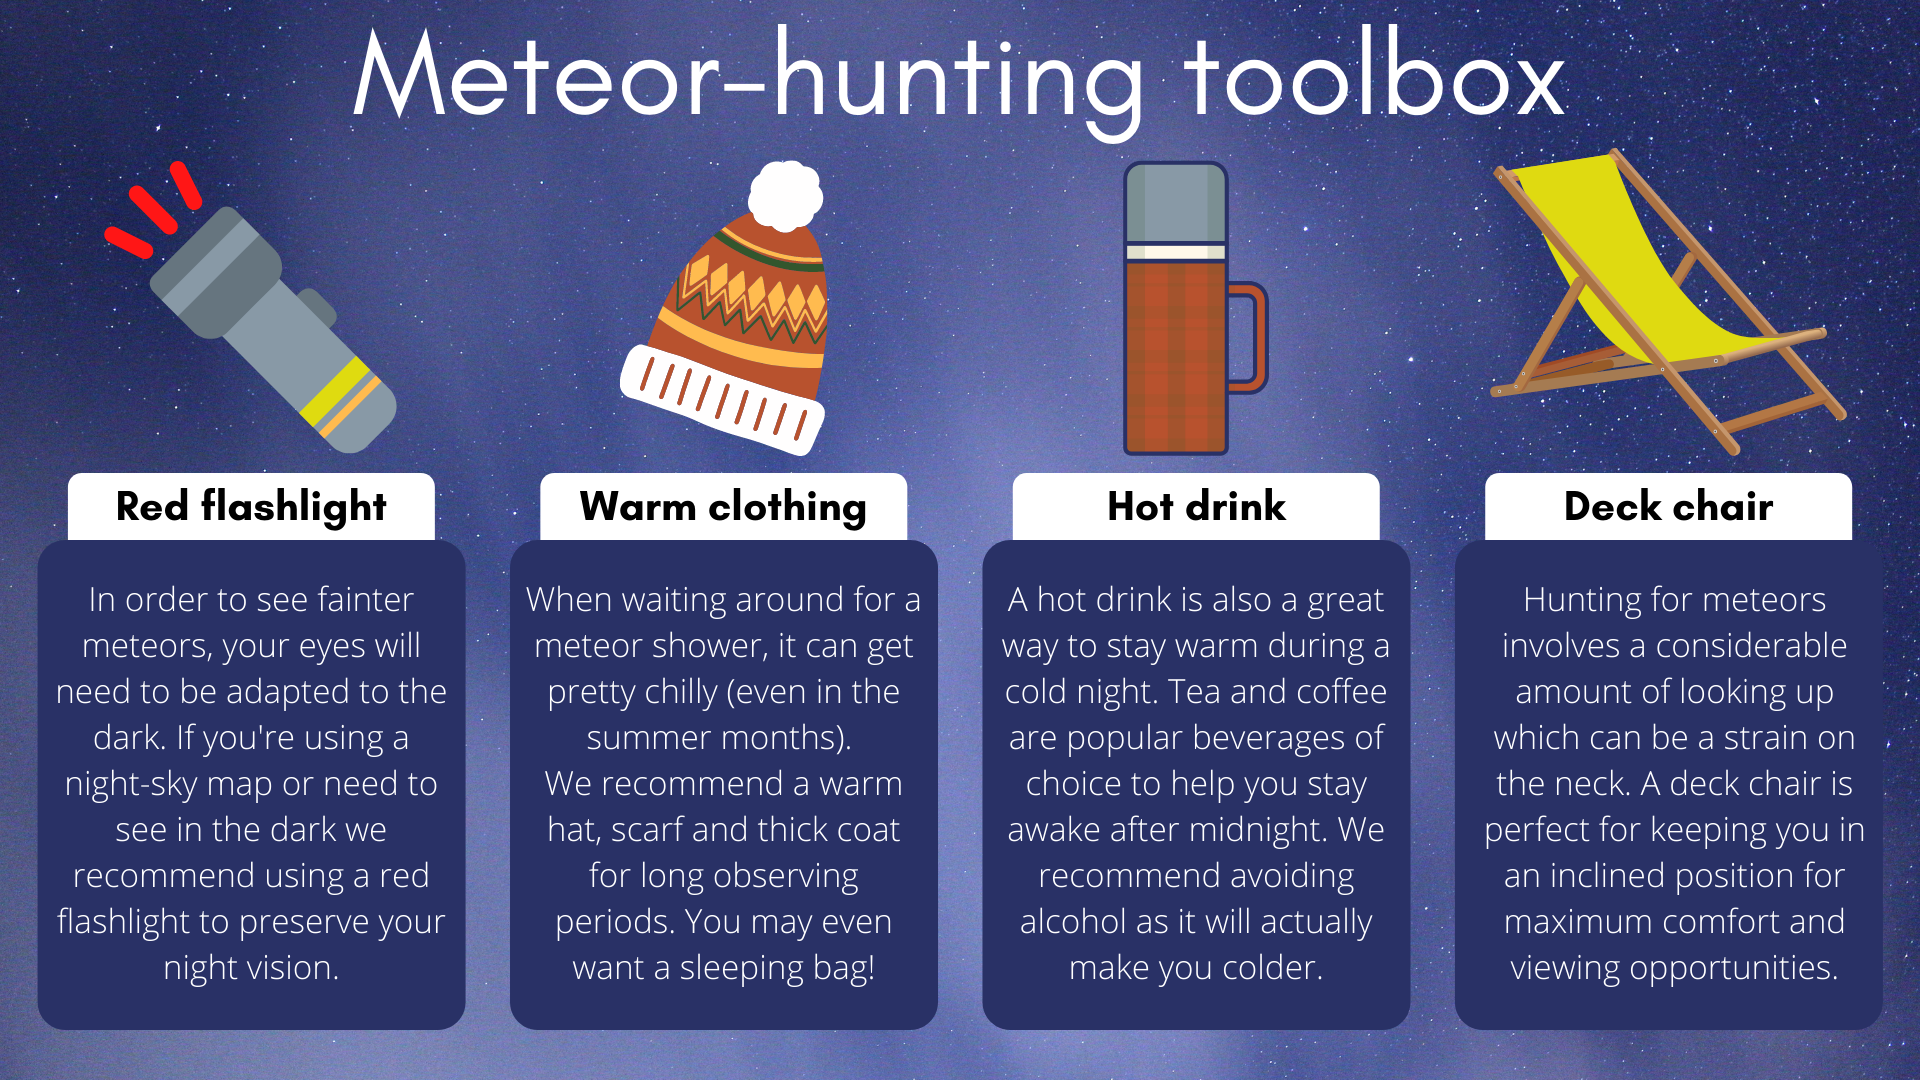 Para la experiencia perfecta de caza de meteoritos, necesitará una linterna de referencia, ropa abrigada, una bebida caliente y una buena tumbona.